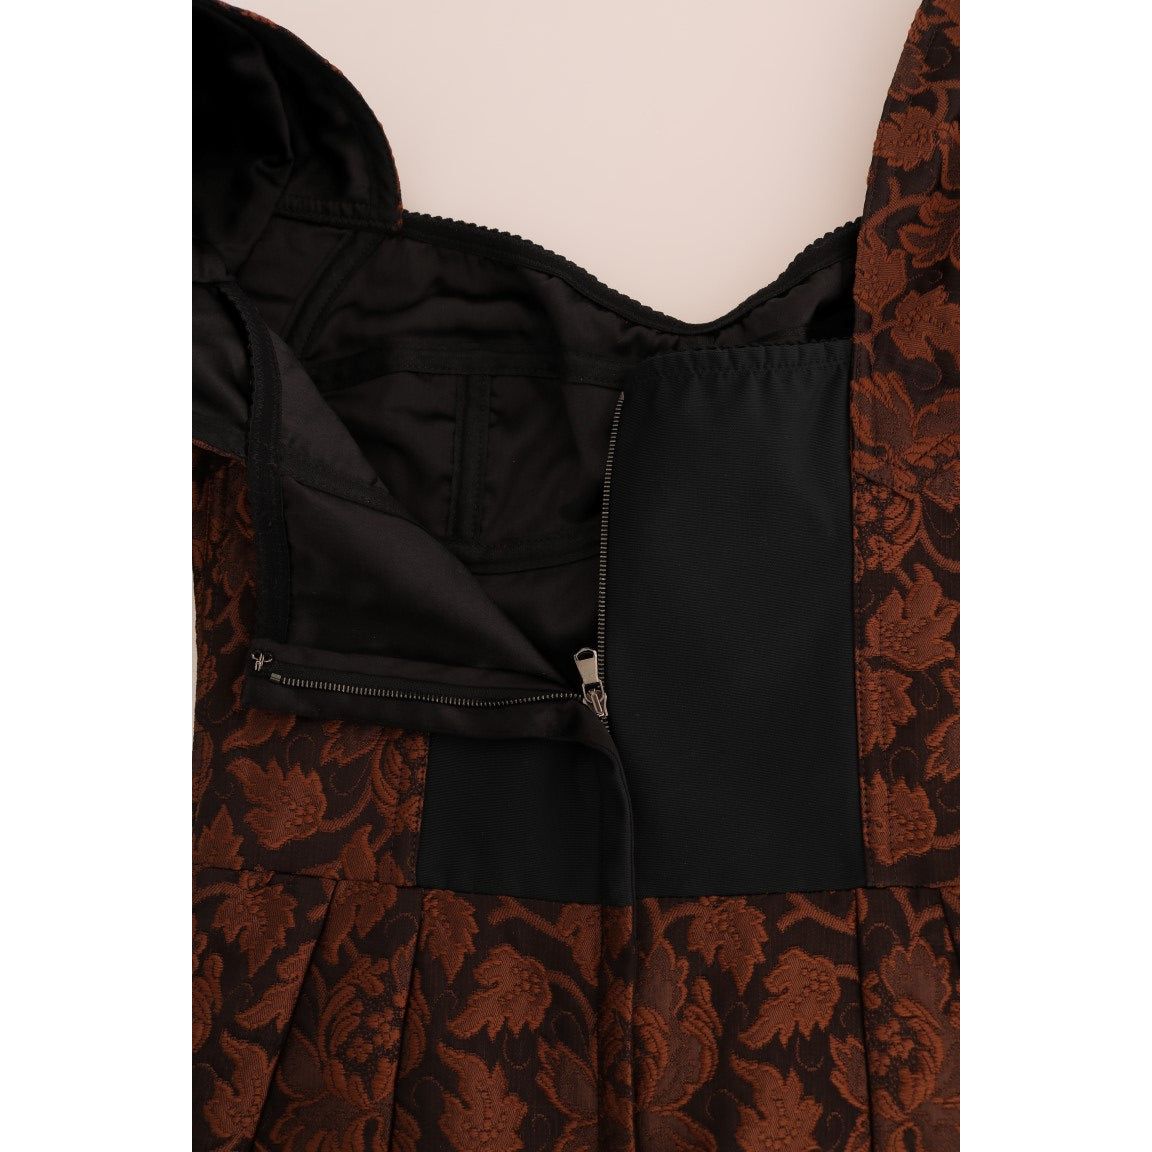 Dolce & Gabbana | Black Brown Floral Brocade A-Line Dress | McRichard Designer Brands